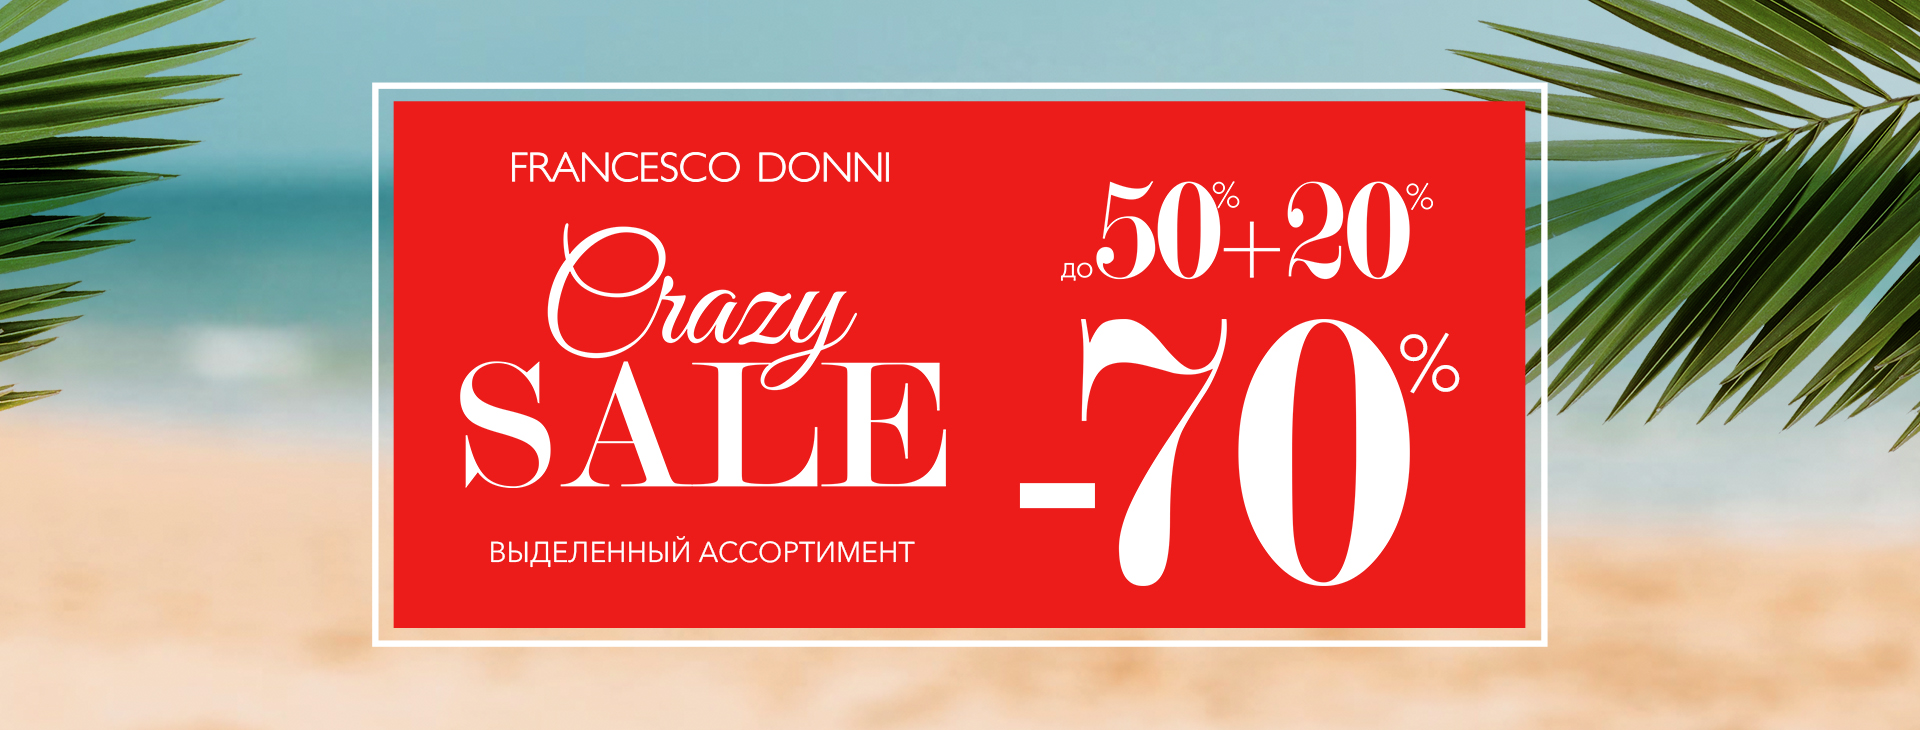 В магазине Francesco Donni стартовал  «Crazy Sale скидки до -70%!»